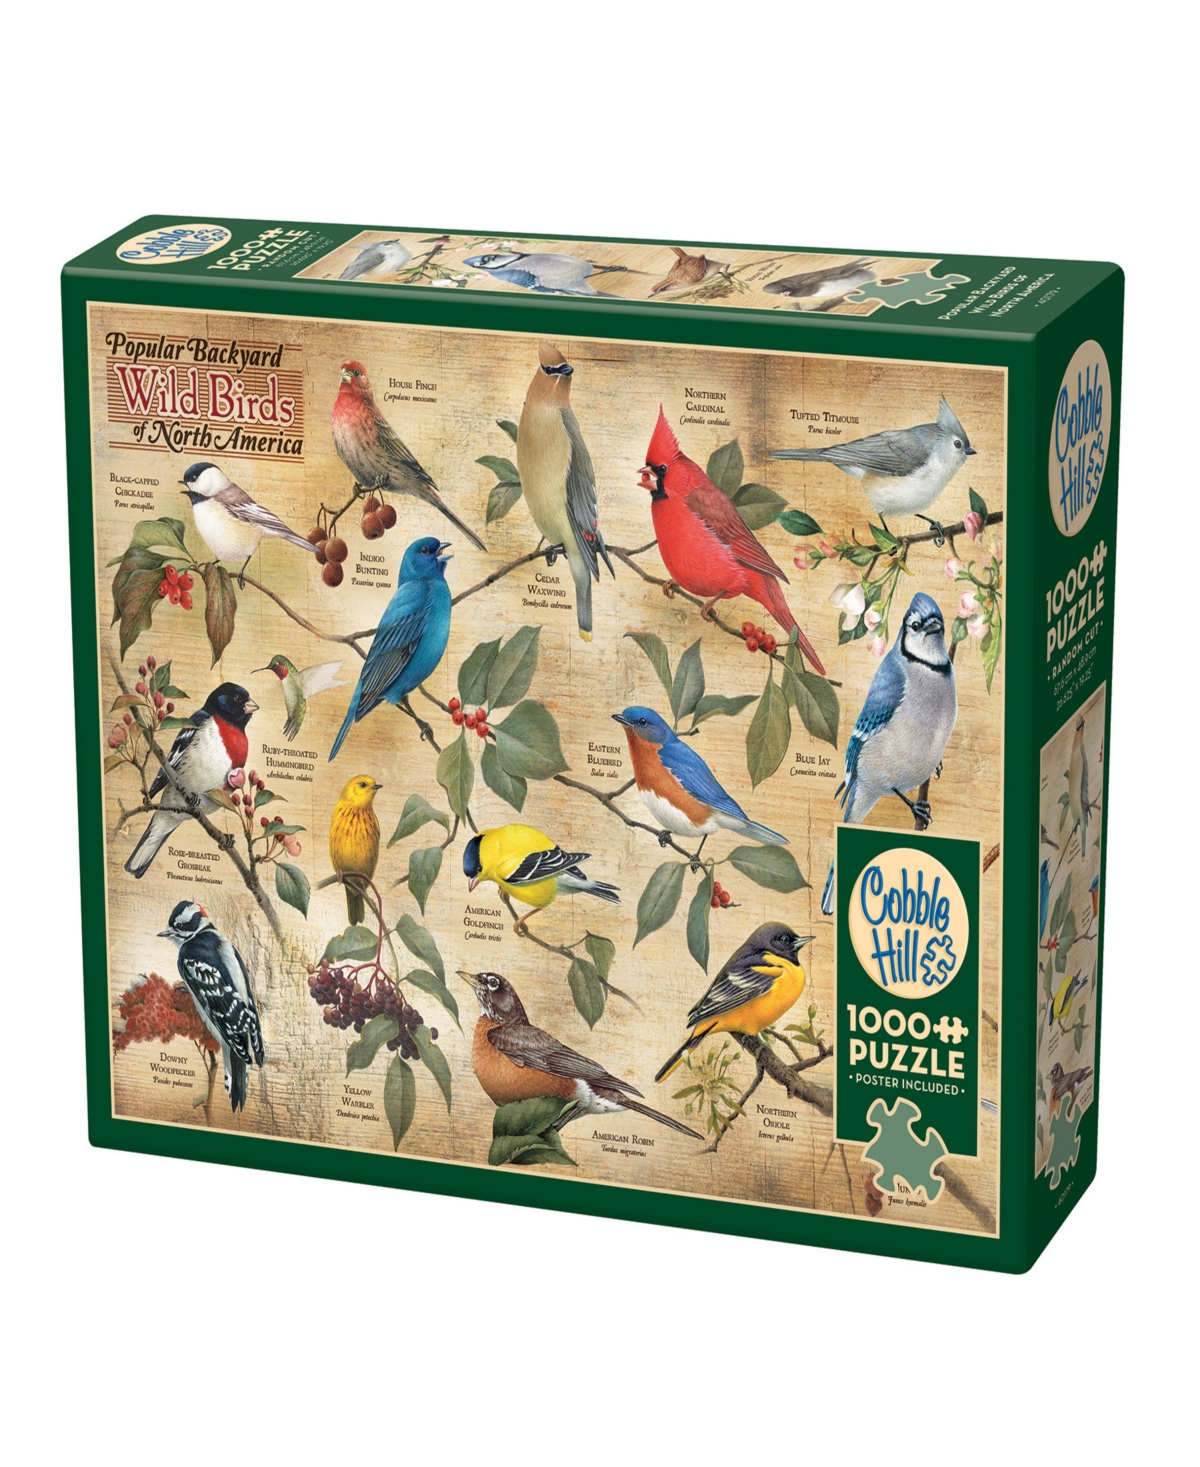 Cobble Hill Kids' - Popular Backyard Wild Birds Of North America Puzzle In Multi